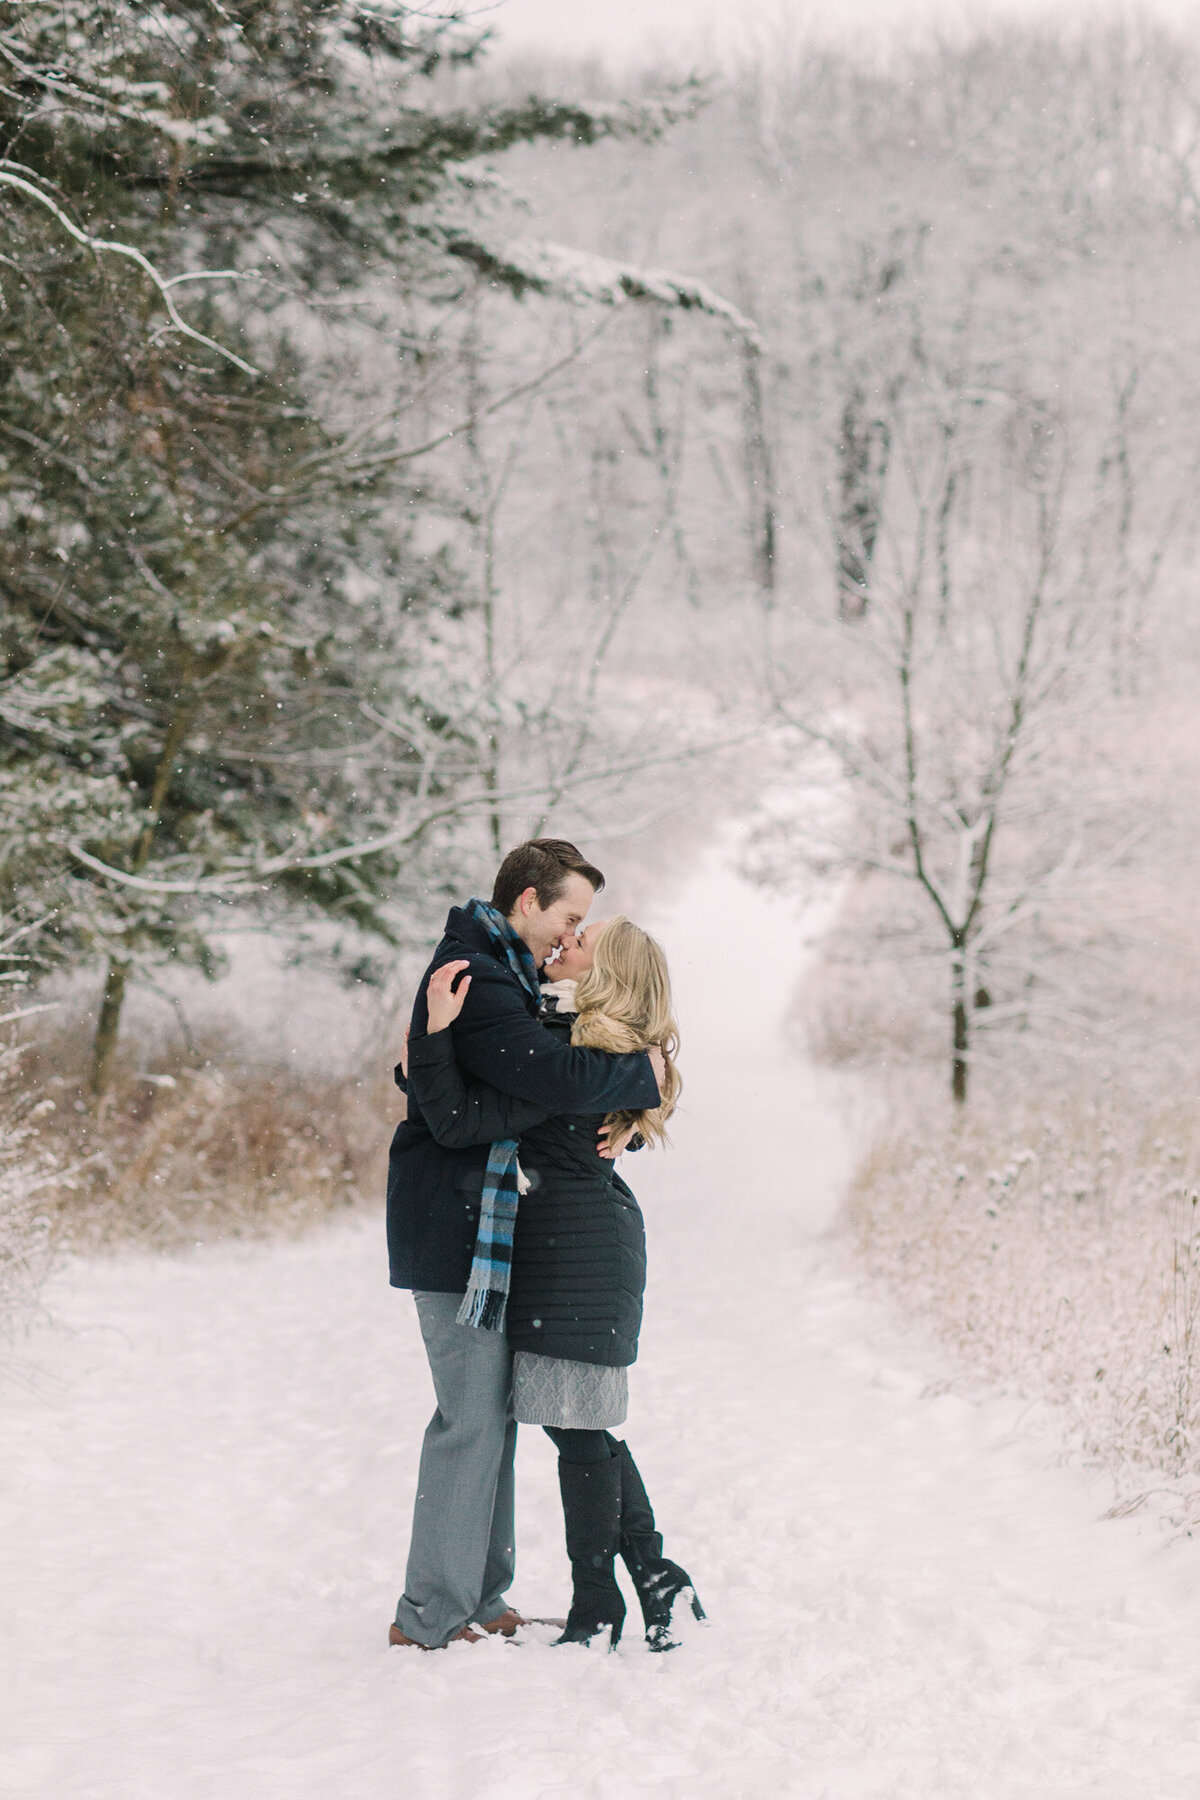 Engagement photo taken in Crystal Lake Illinois